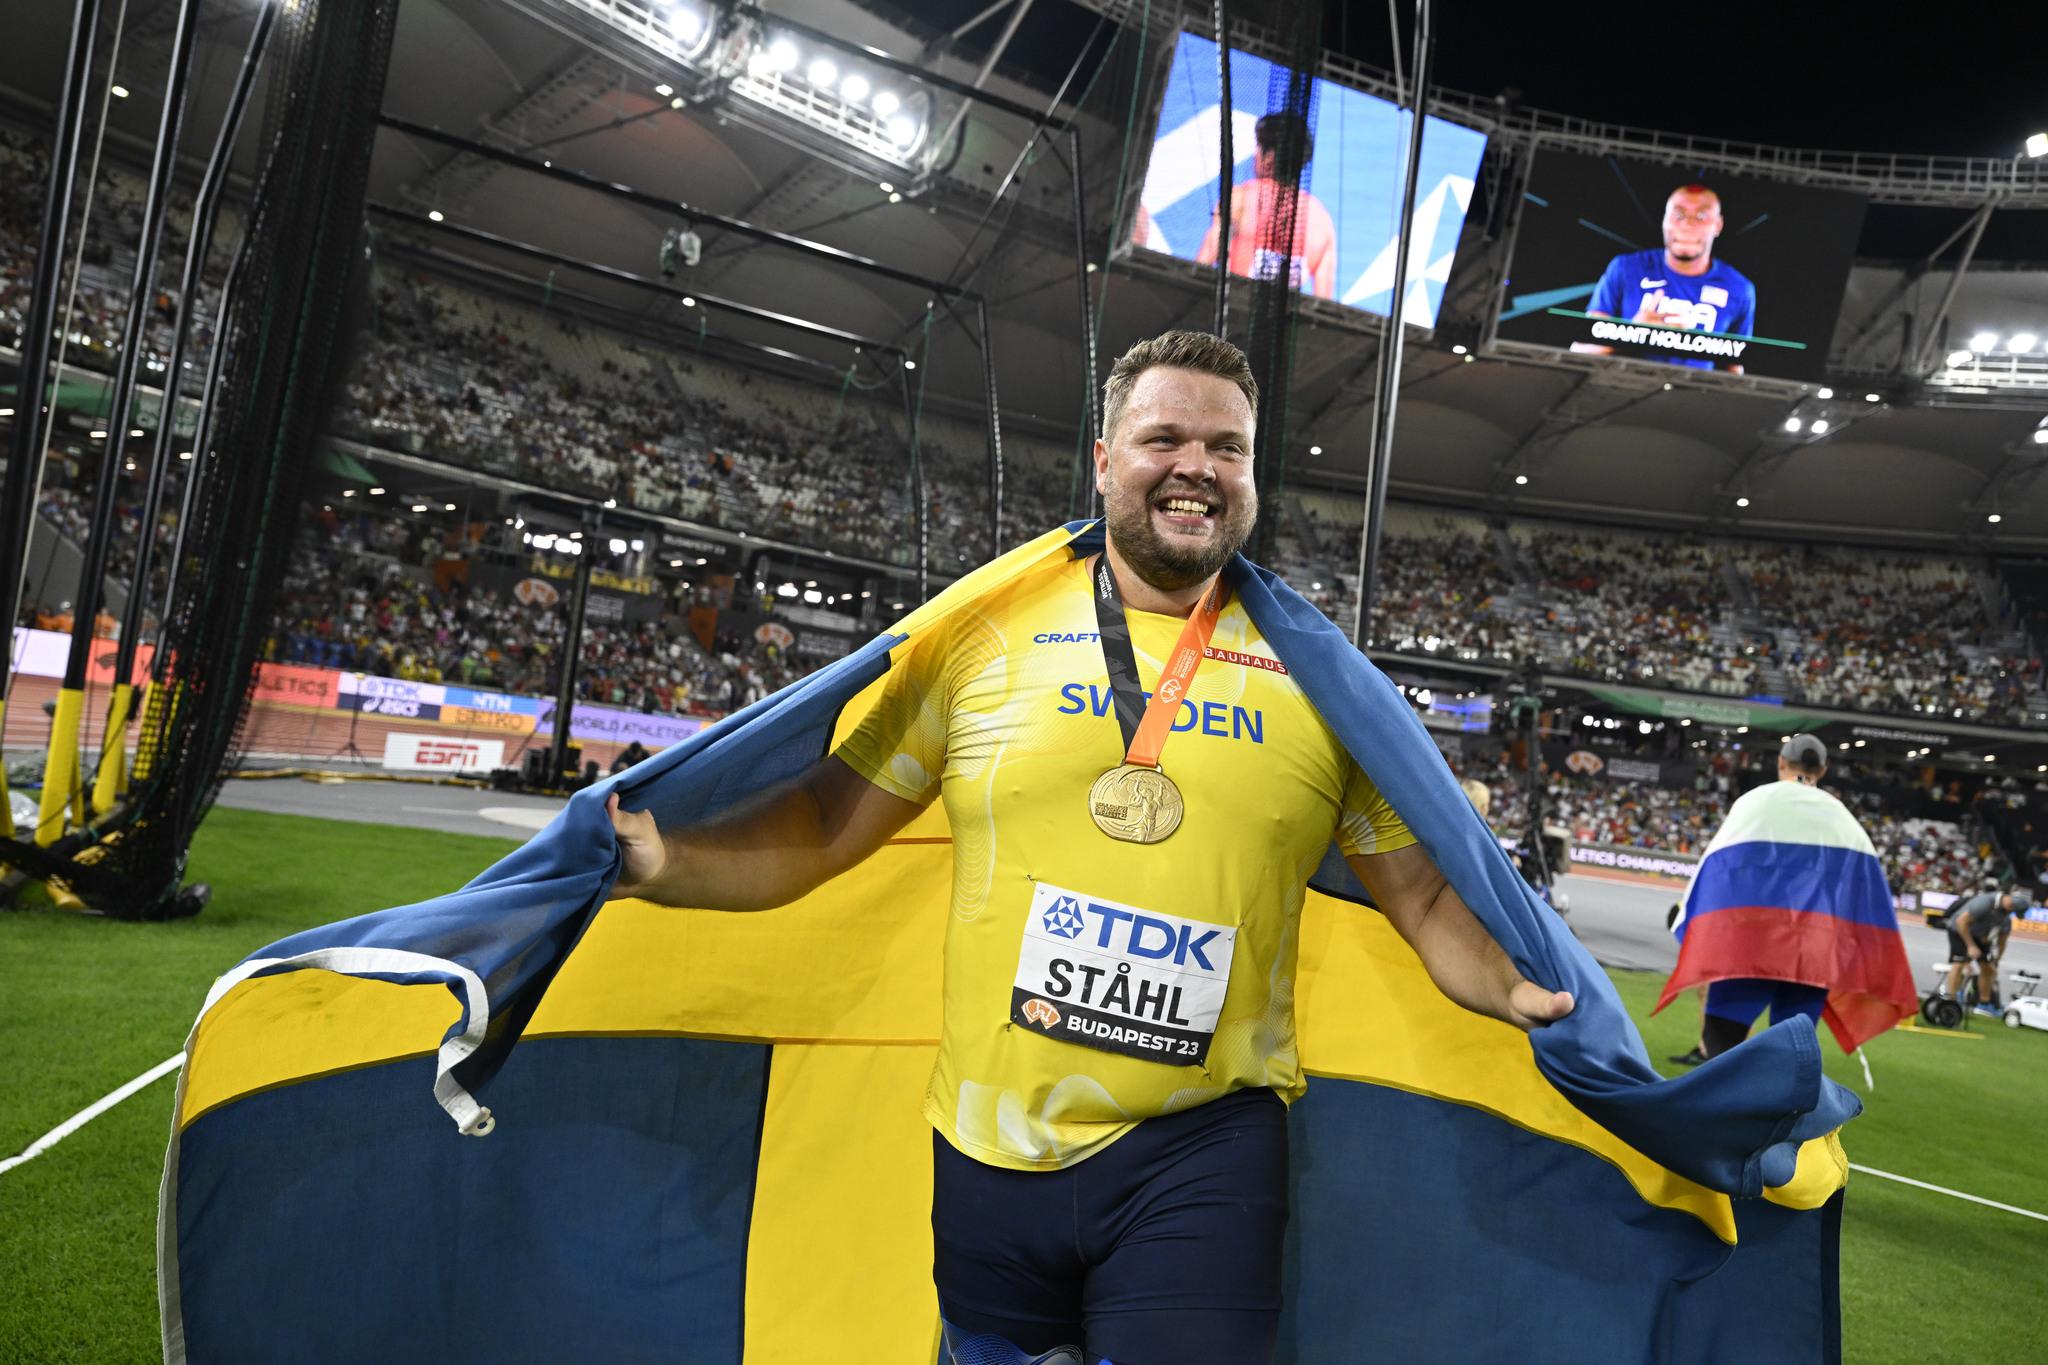 Шведский спорт: метатель диска Даниэль Столь празднует победу на чемпионате мира в Будапеште.